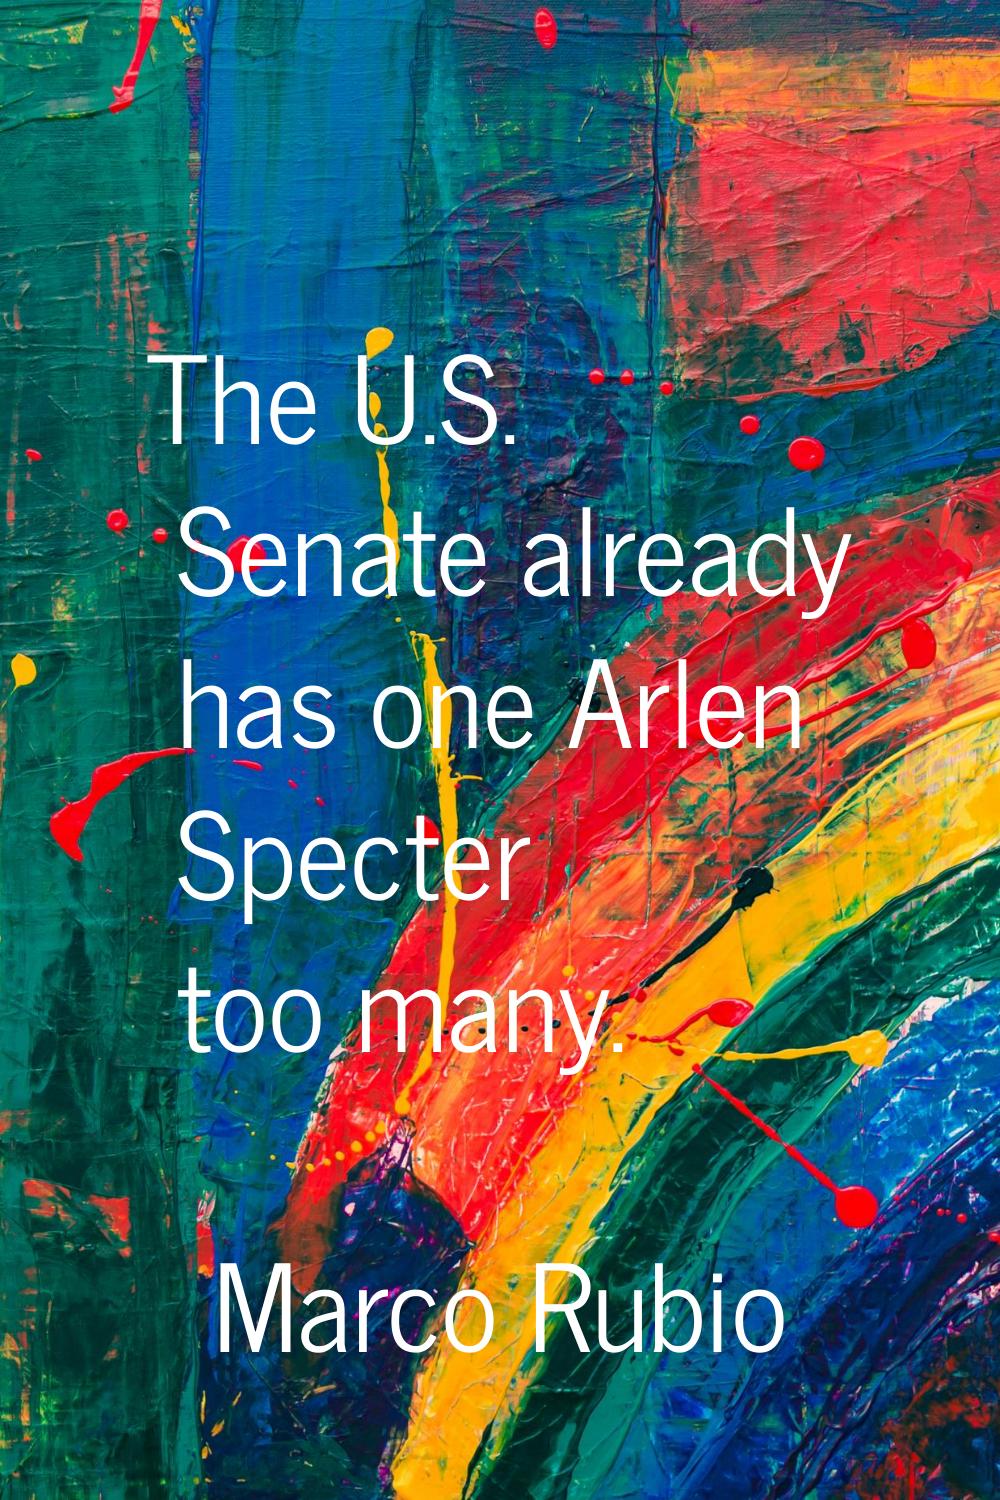 The U.S. Senate already has one Arlen Specter too many.